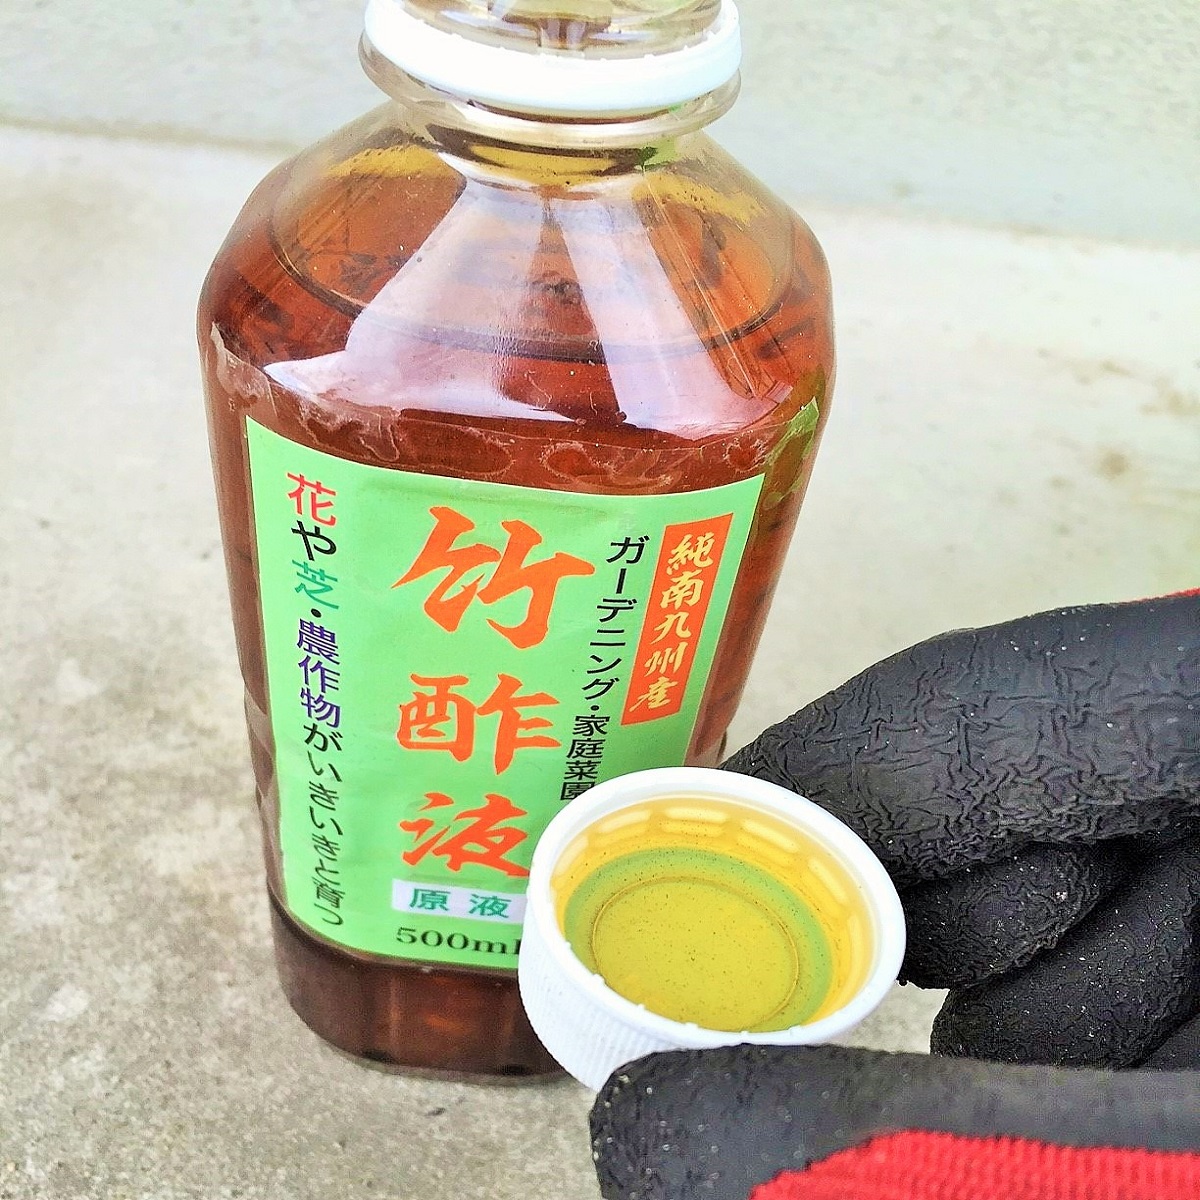 竹酢液、木酢液は危険？ 南九州竹材エコロジー